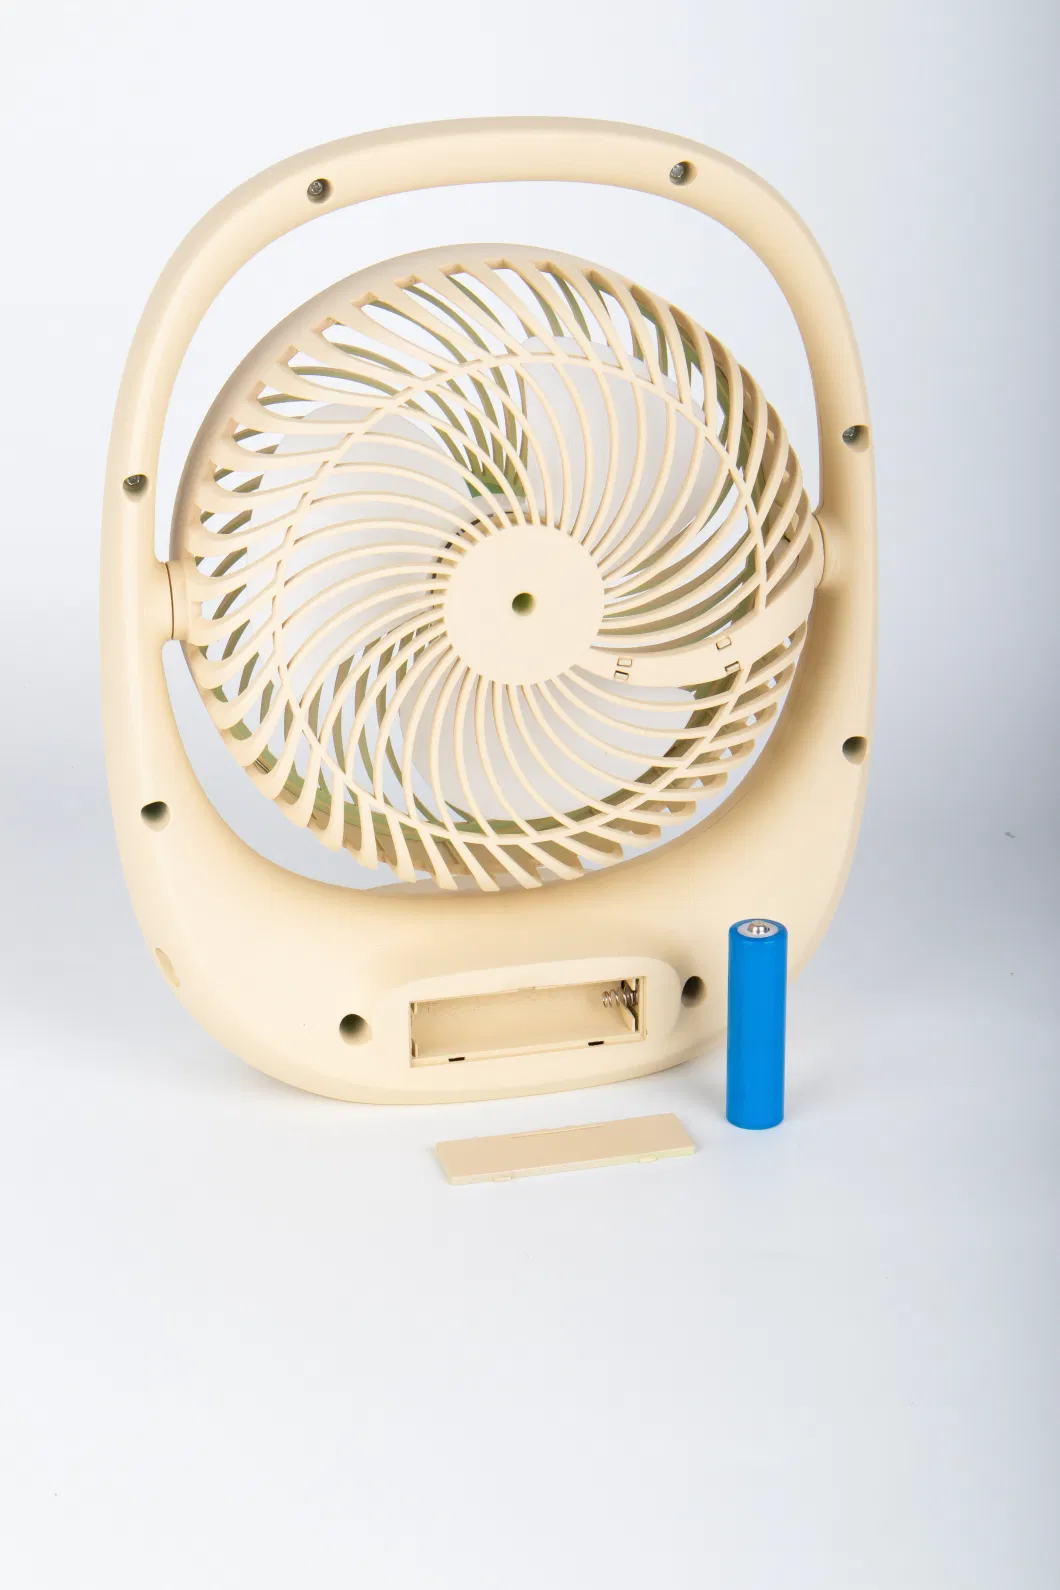 7 Inch Rechargeable Desk Fan with Emergency Light 3 Fan Speed